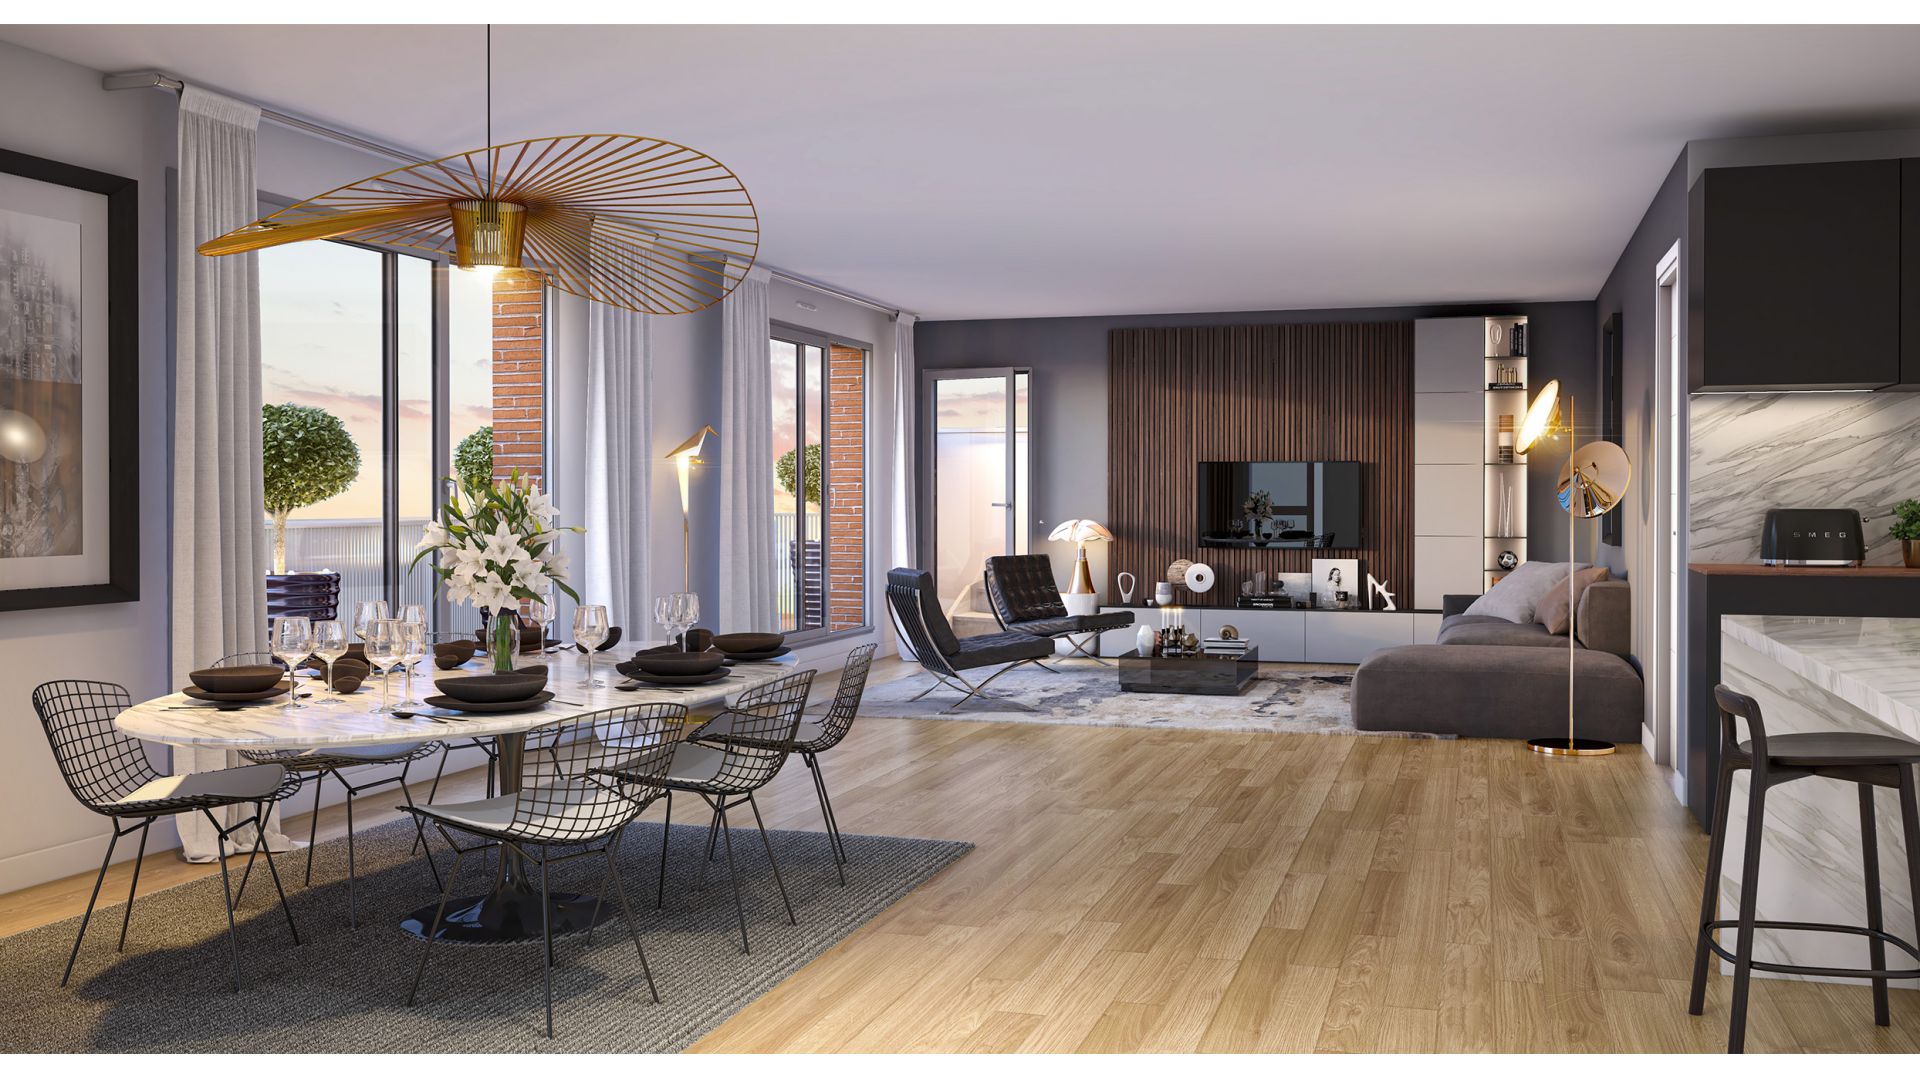 Greencity immobilier - achat appartements neufs du T2 au T6 - Résidence Le Saint-Louis - 31400 - Toulouse Côte Pavé - vue intérieure